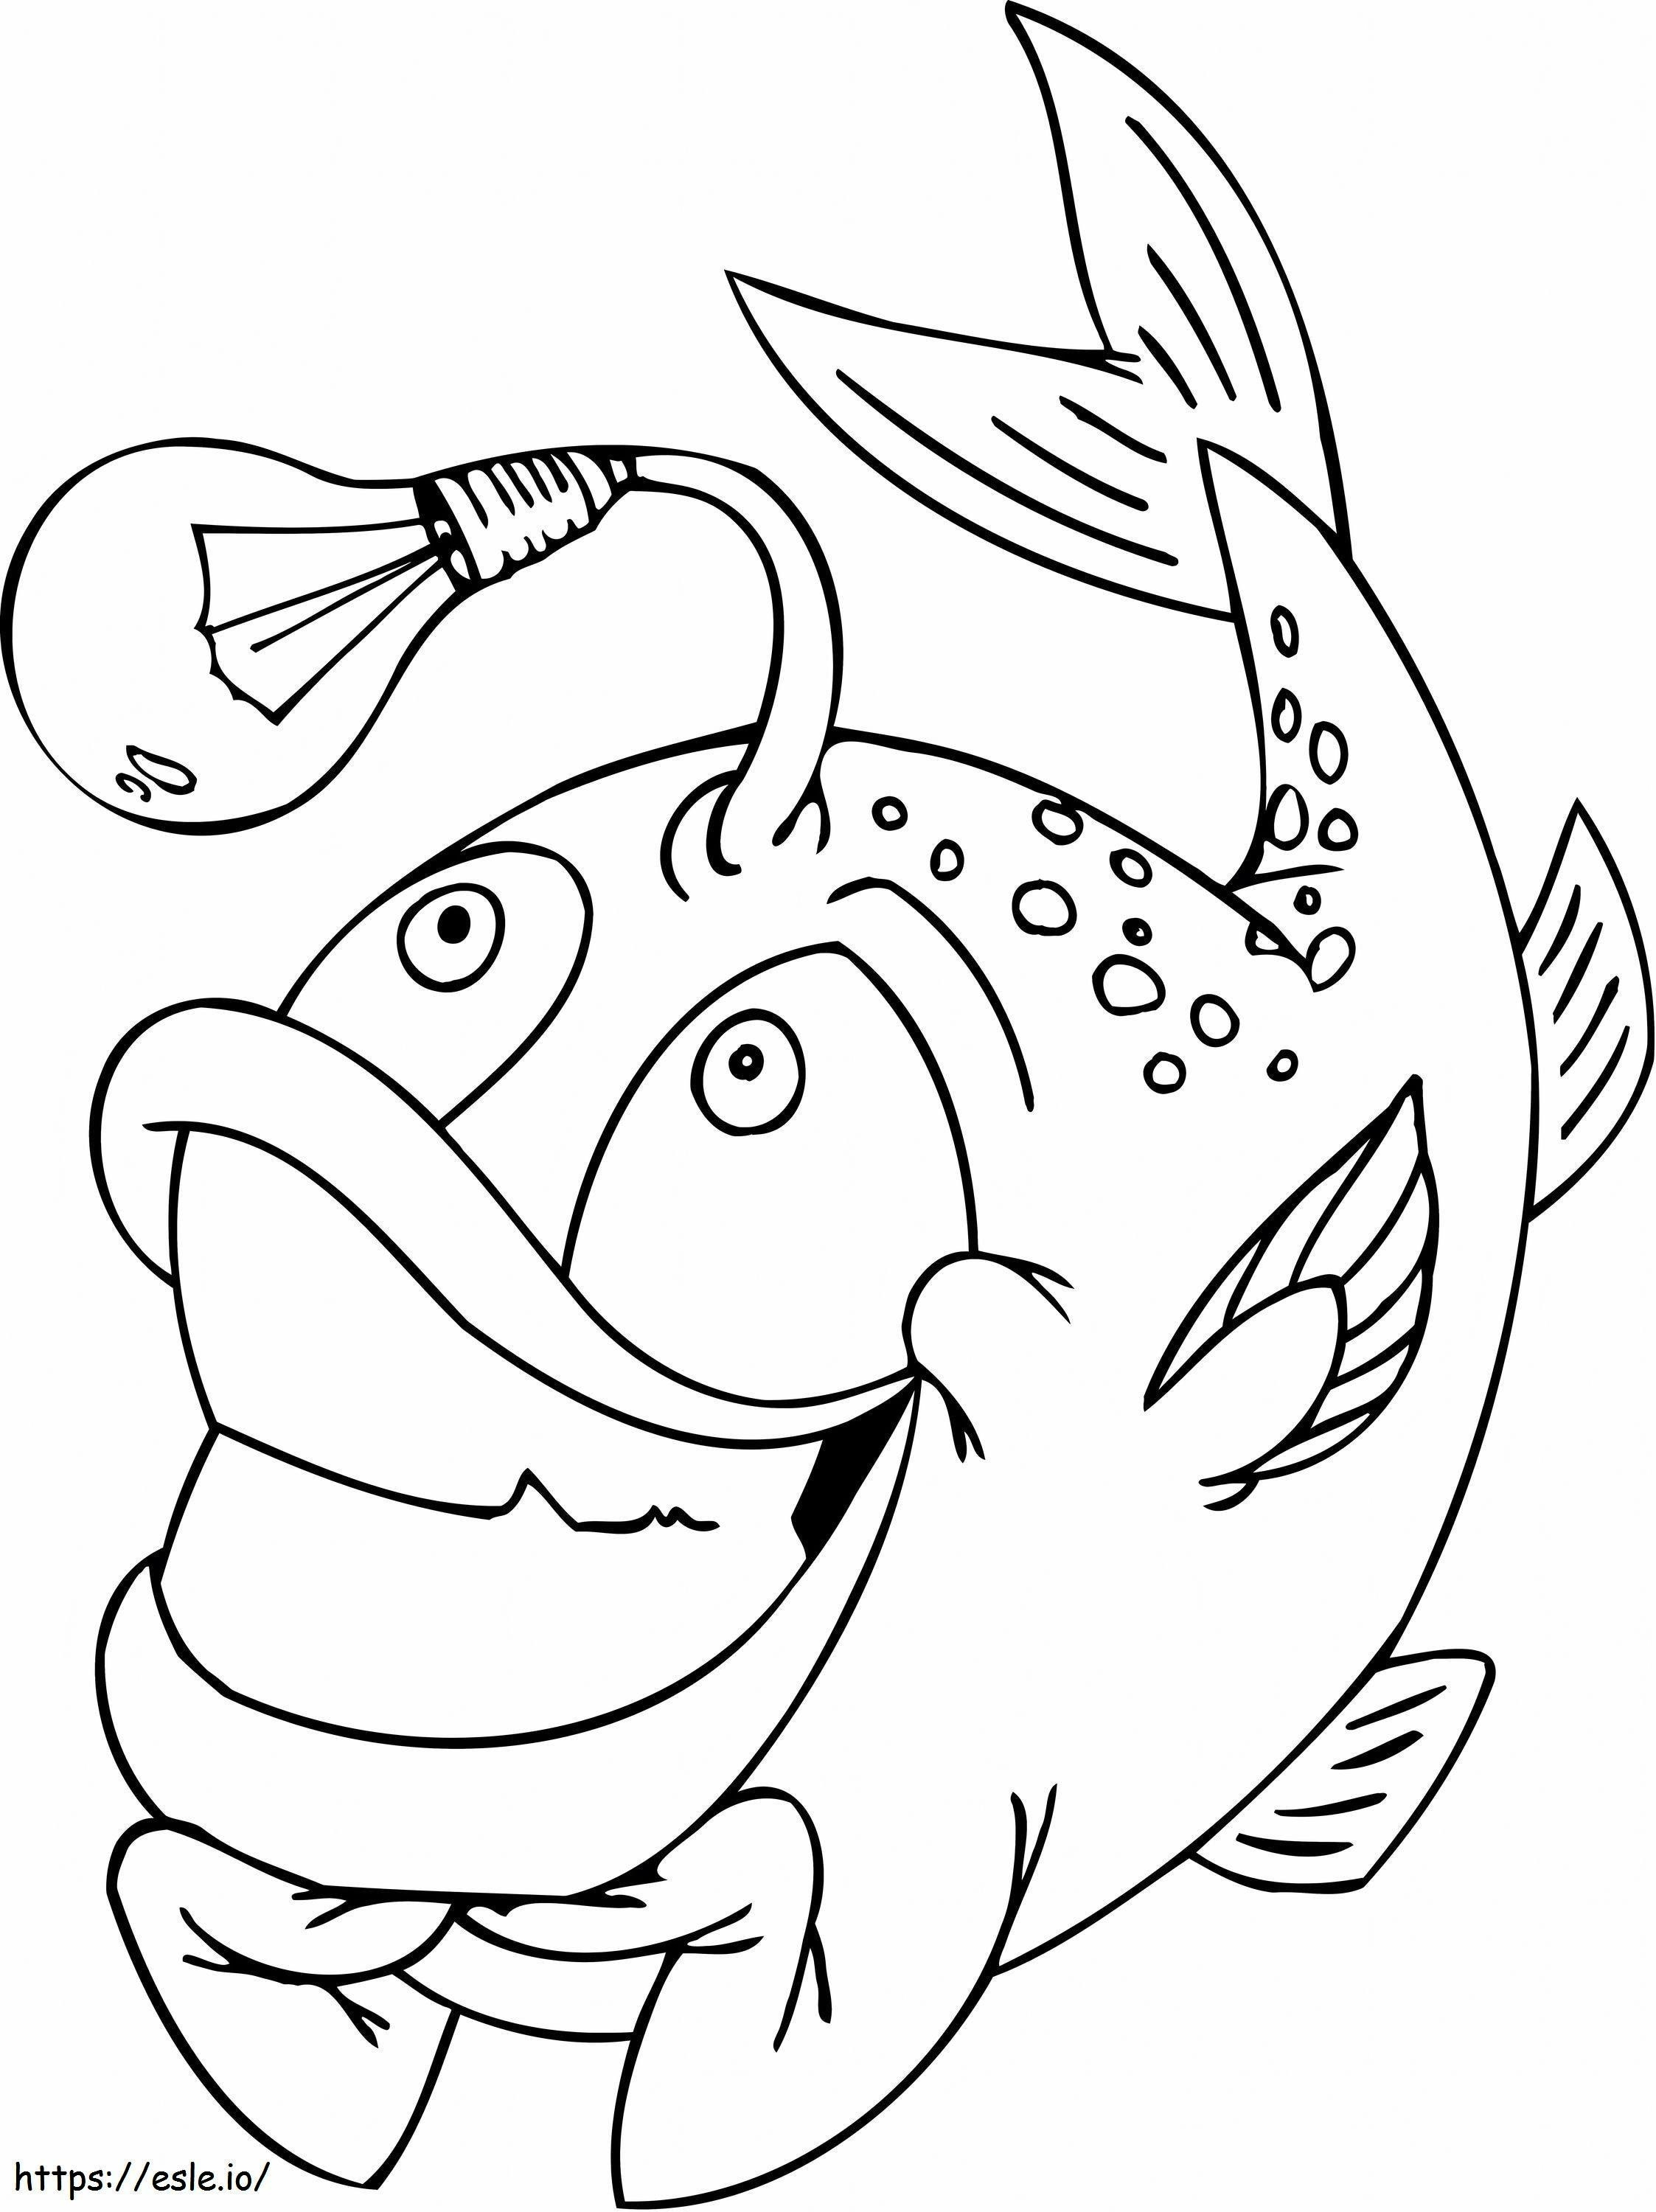 1545181971_Śmieszne ryby w łuskach kolorowanka